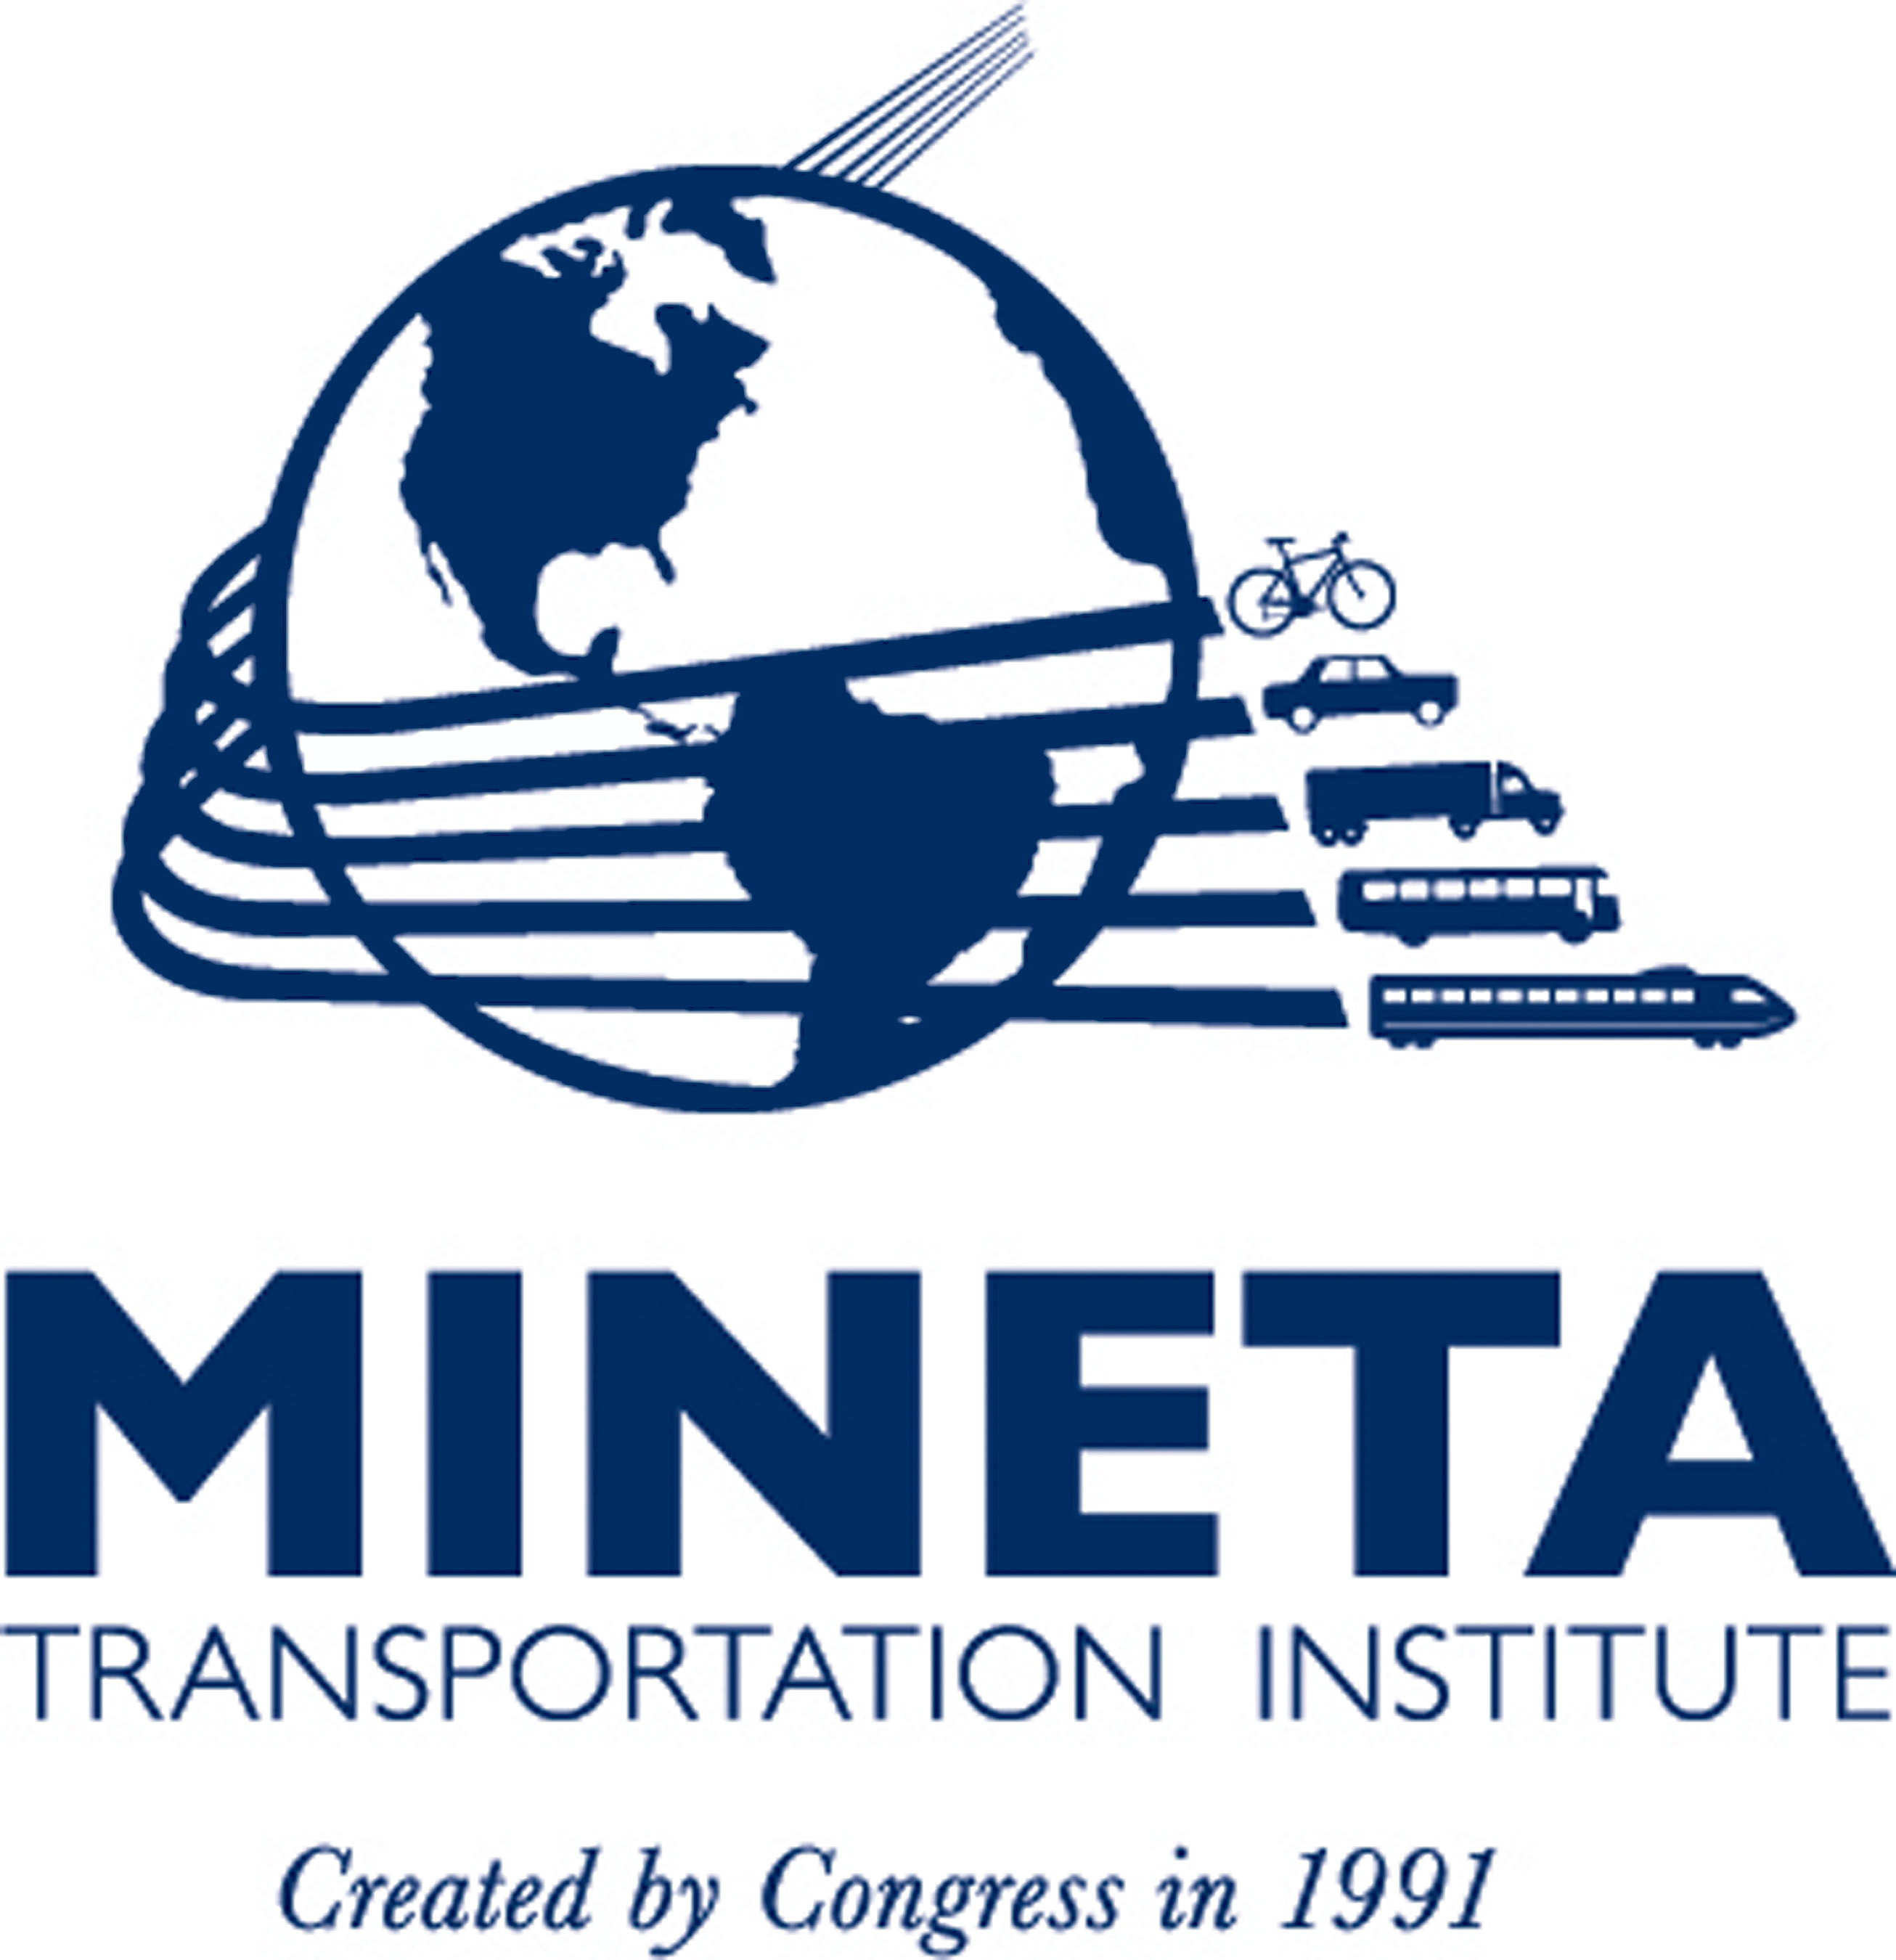 Mineta Transportation Institute. (PRNewsFoto/MINETA TRANSPORTATION INSTITUTE) (PRNewsFoto/)